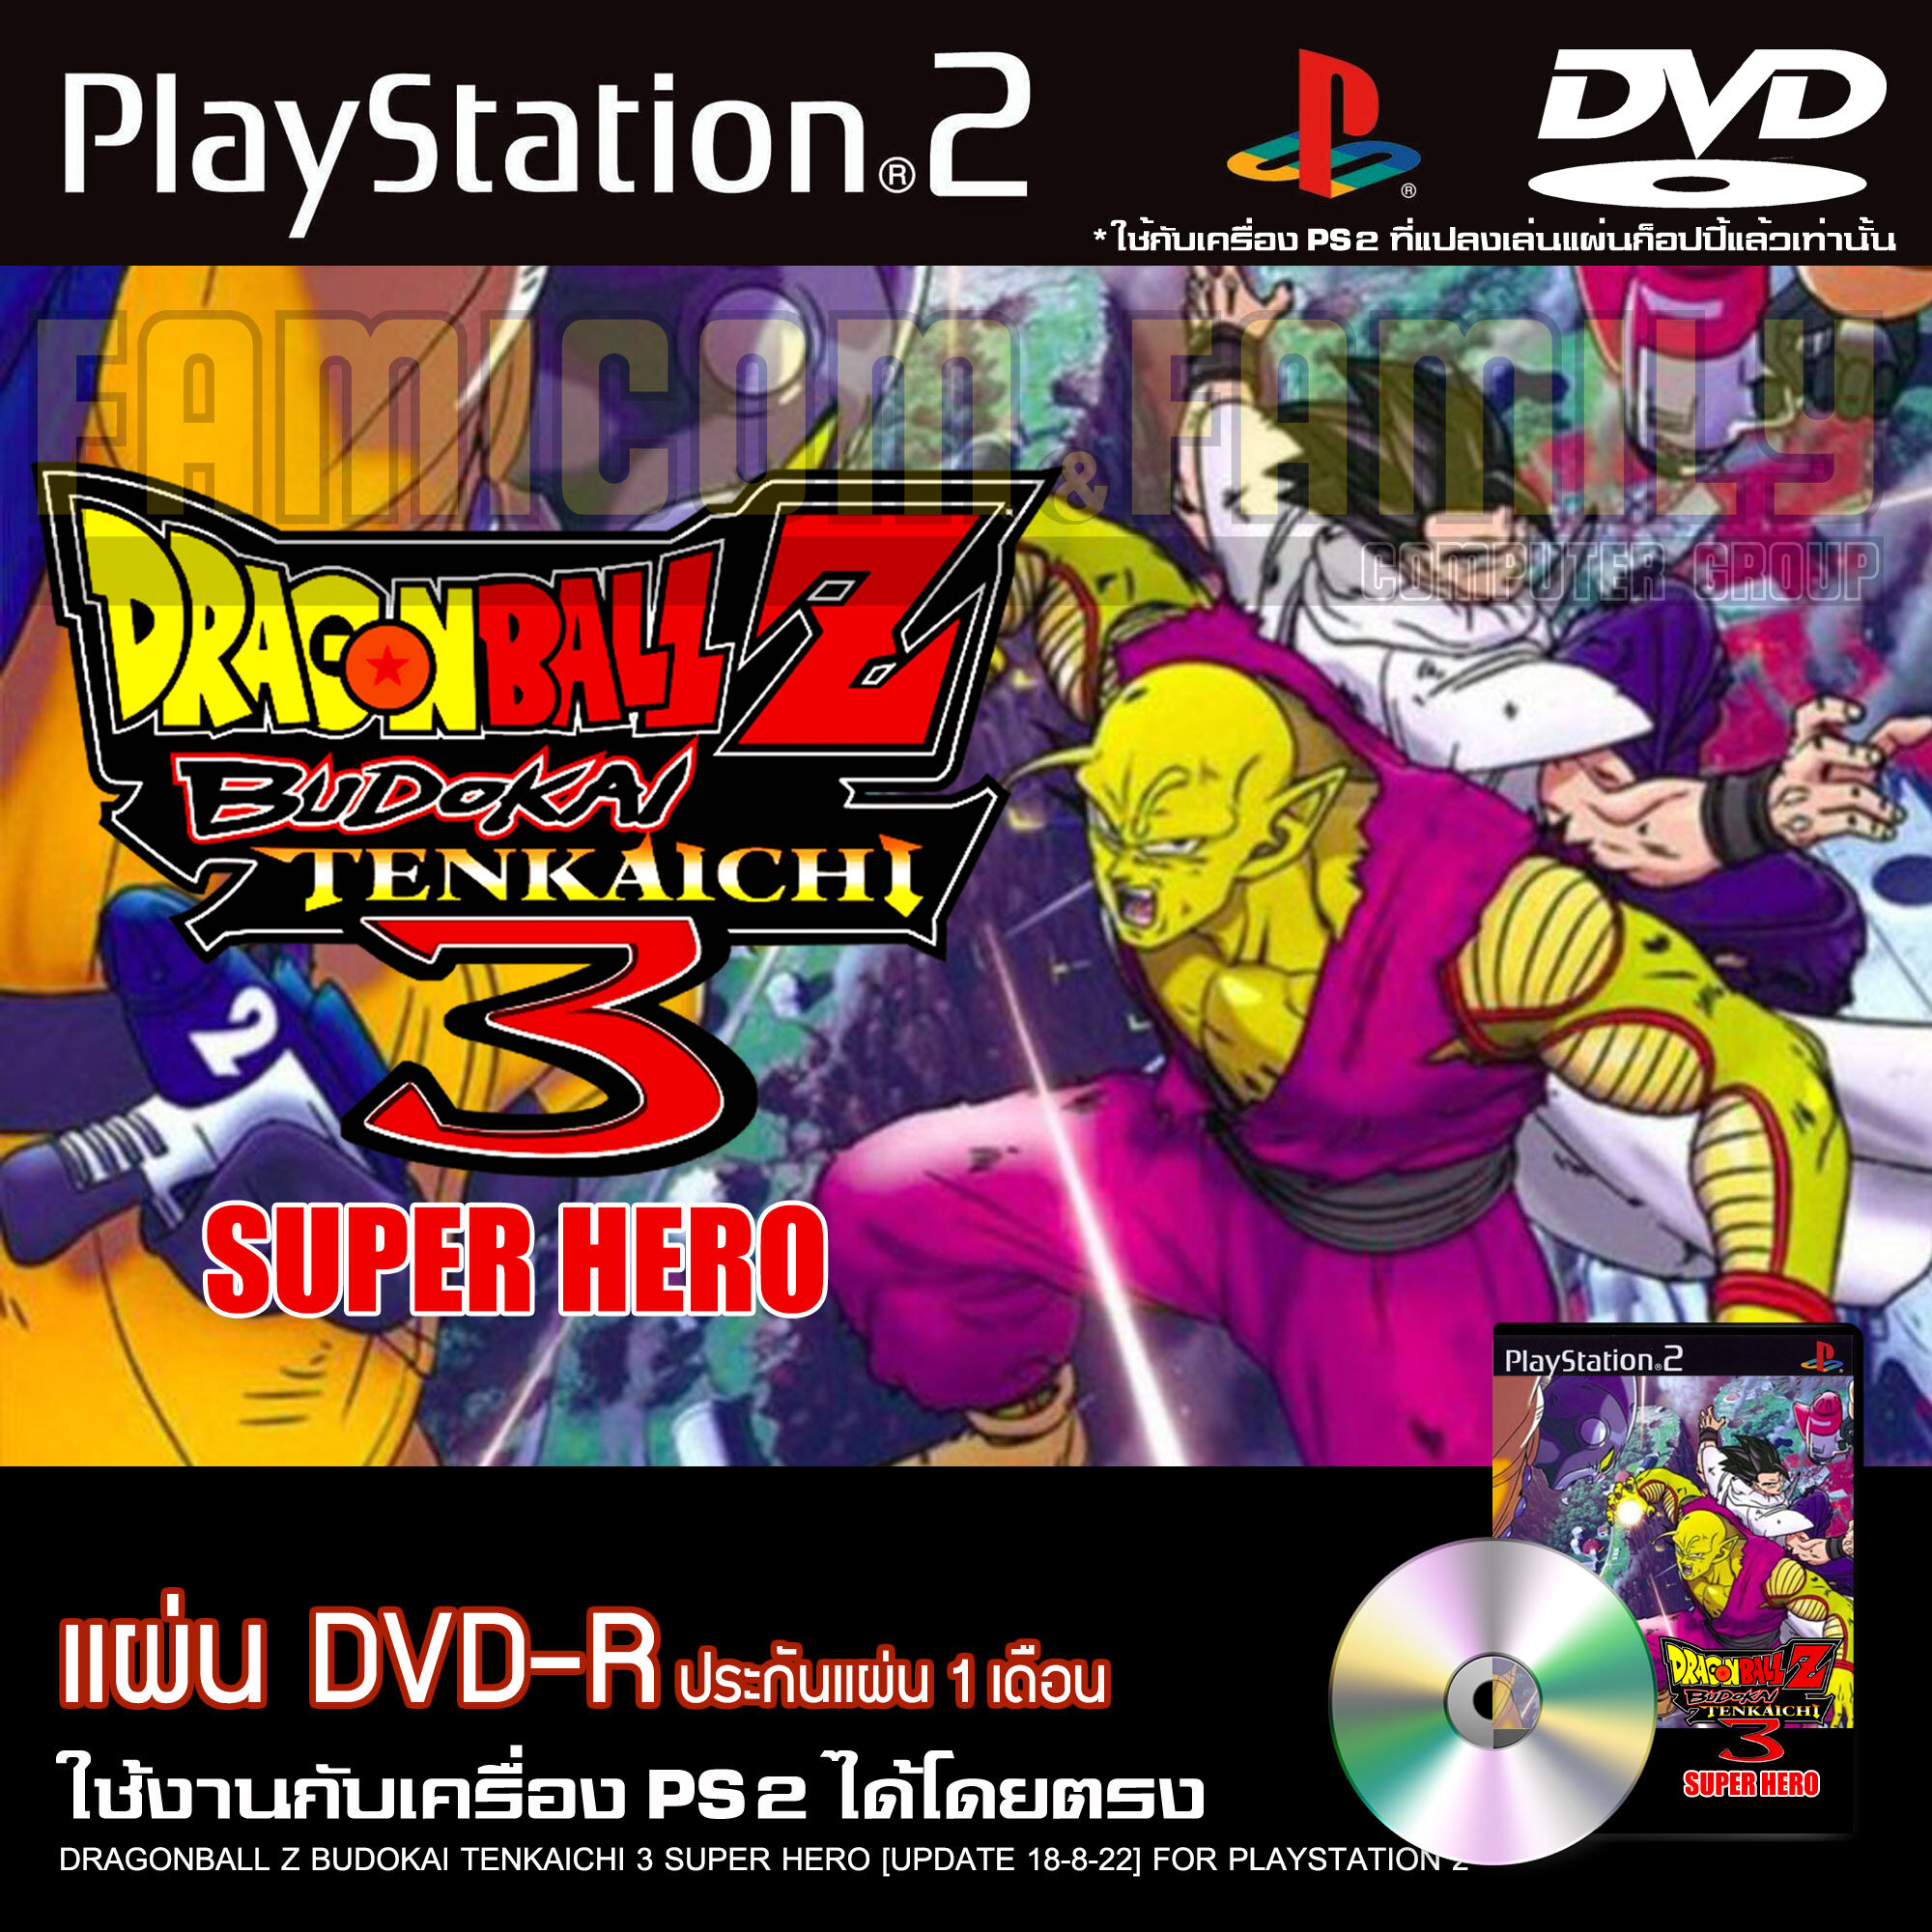 NEW Dragon Ball Super Super Hero DBZ Budokai Tenkaichi 3 MOD PS2